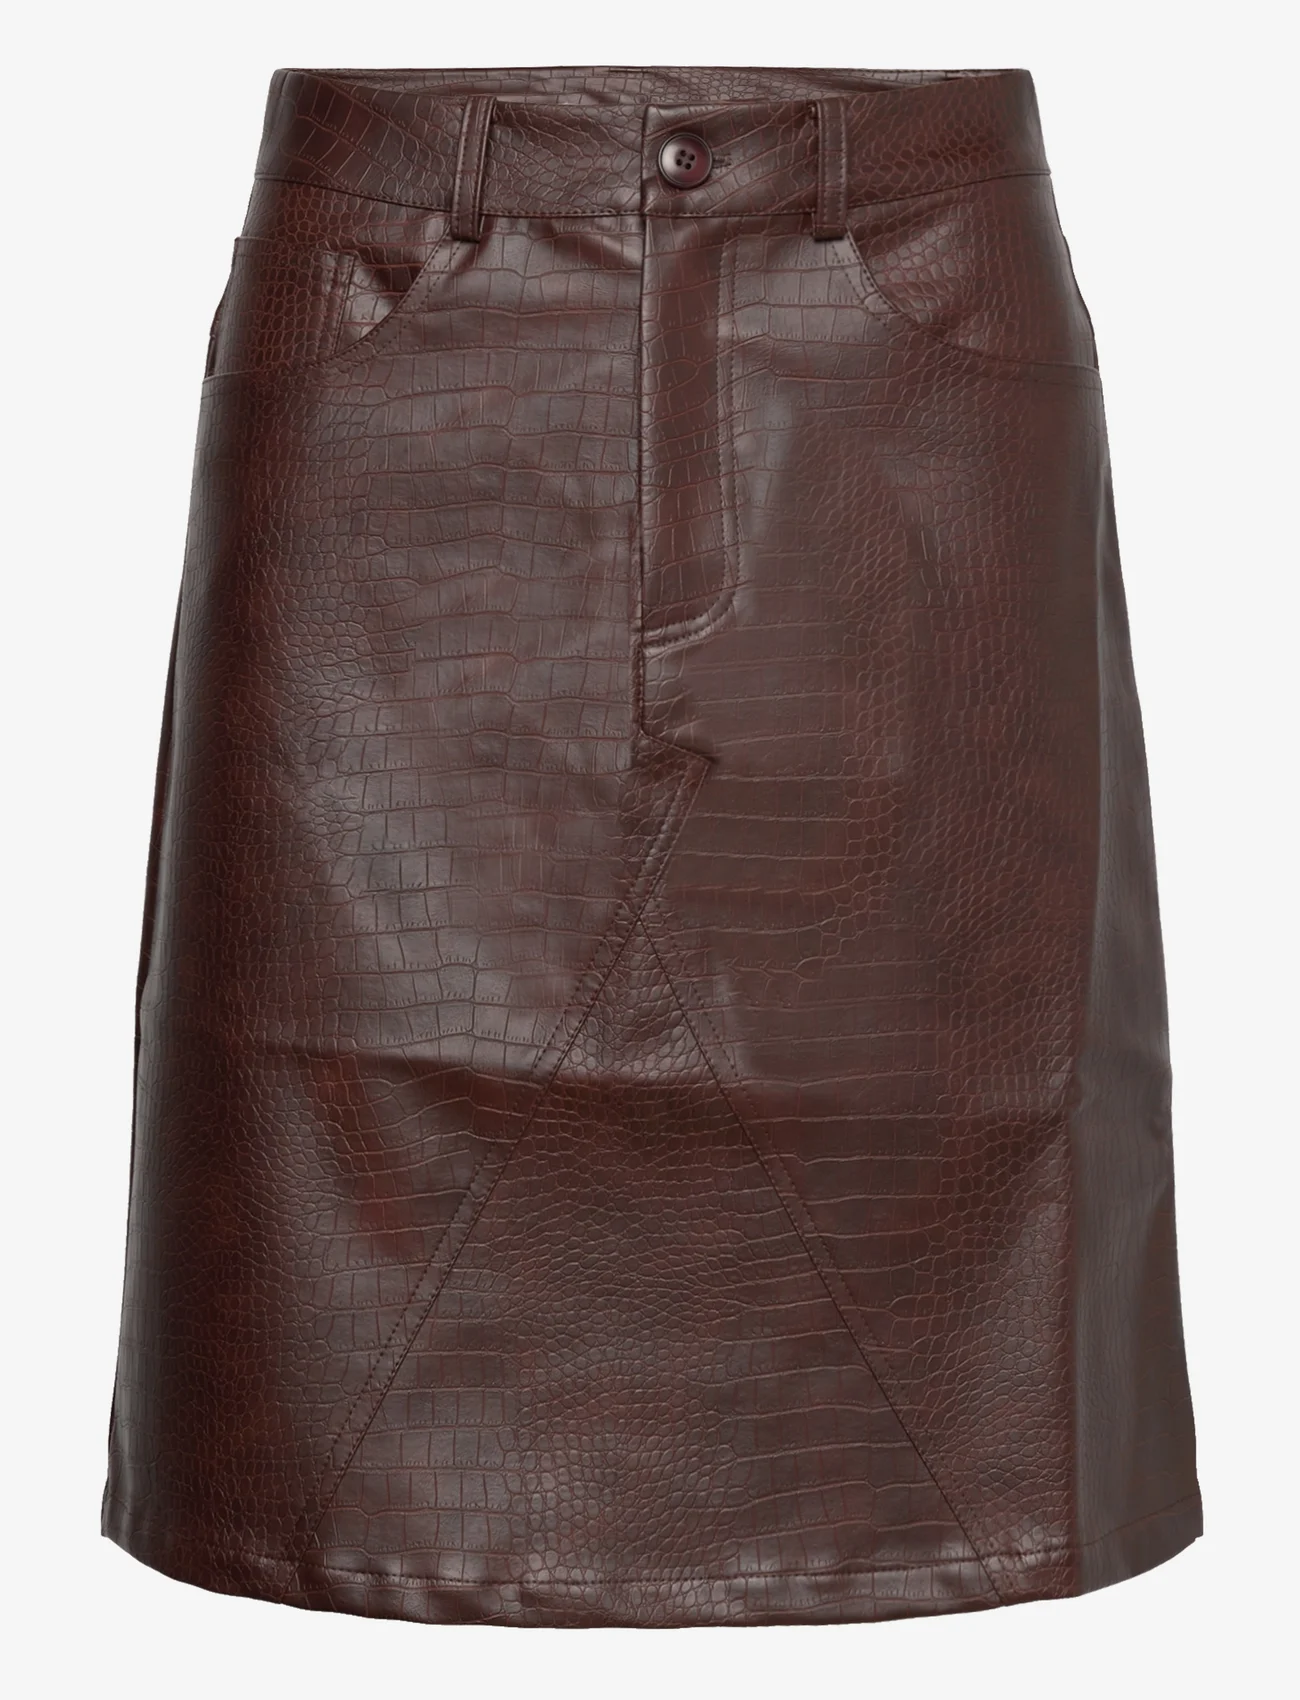 Hosbjerg - Jelona Croc Skirt - kurze röcke - brown - 0